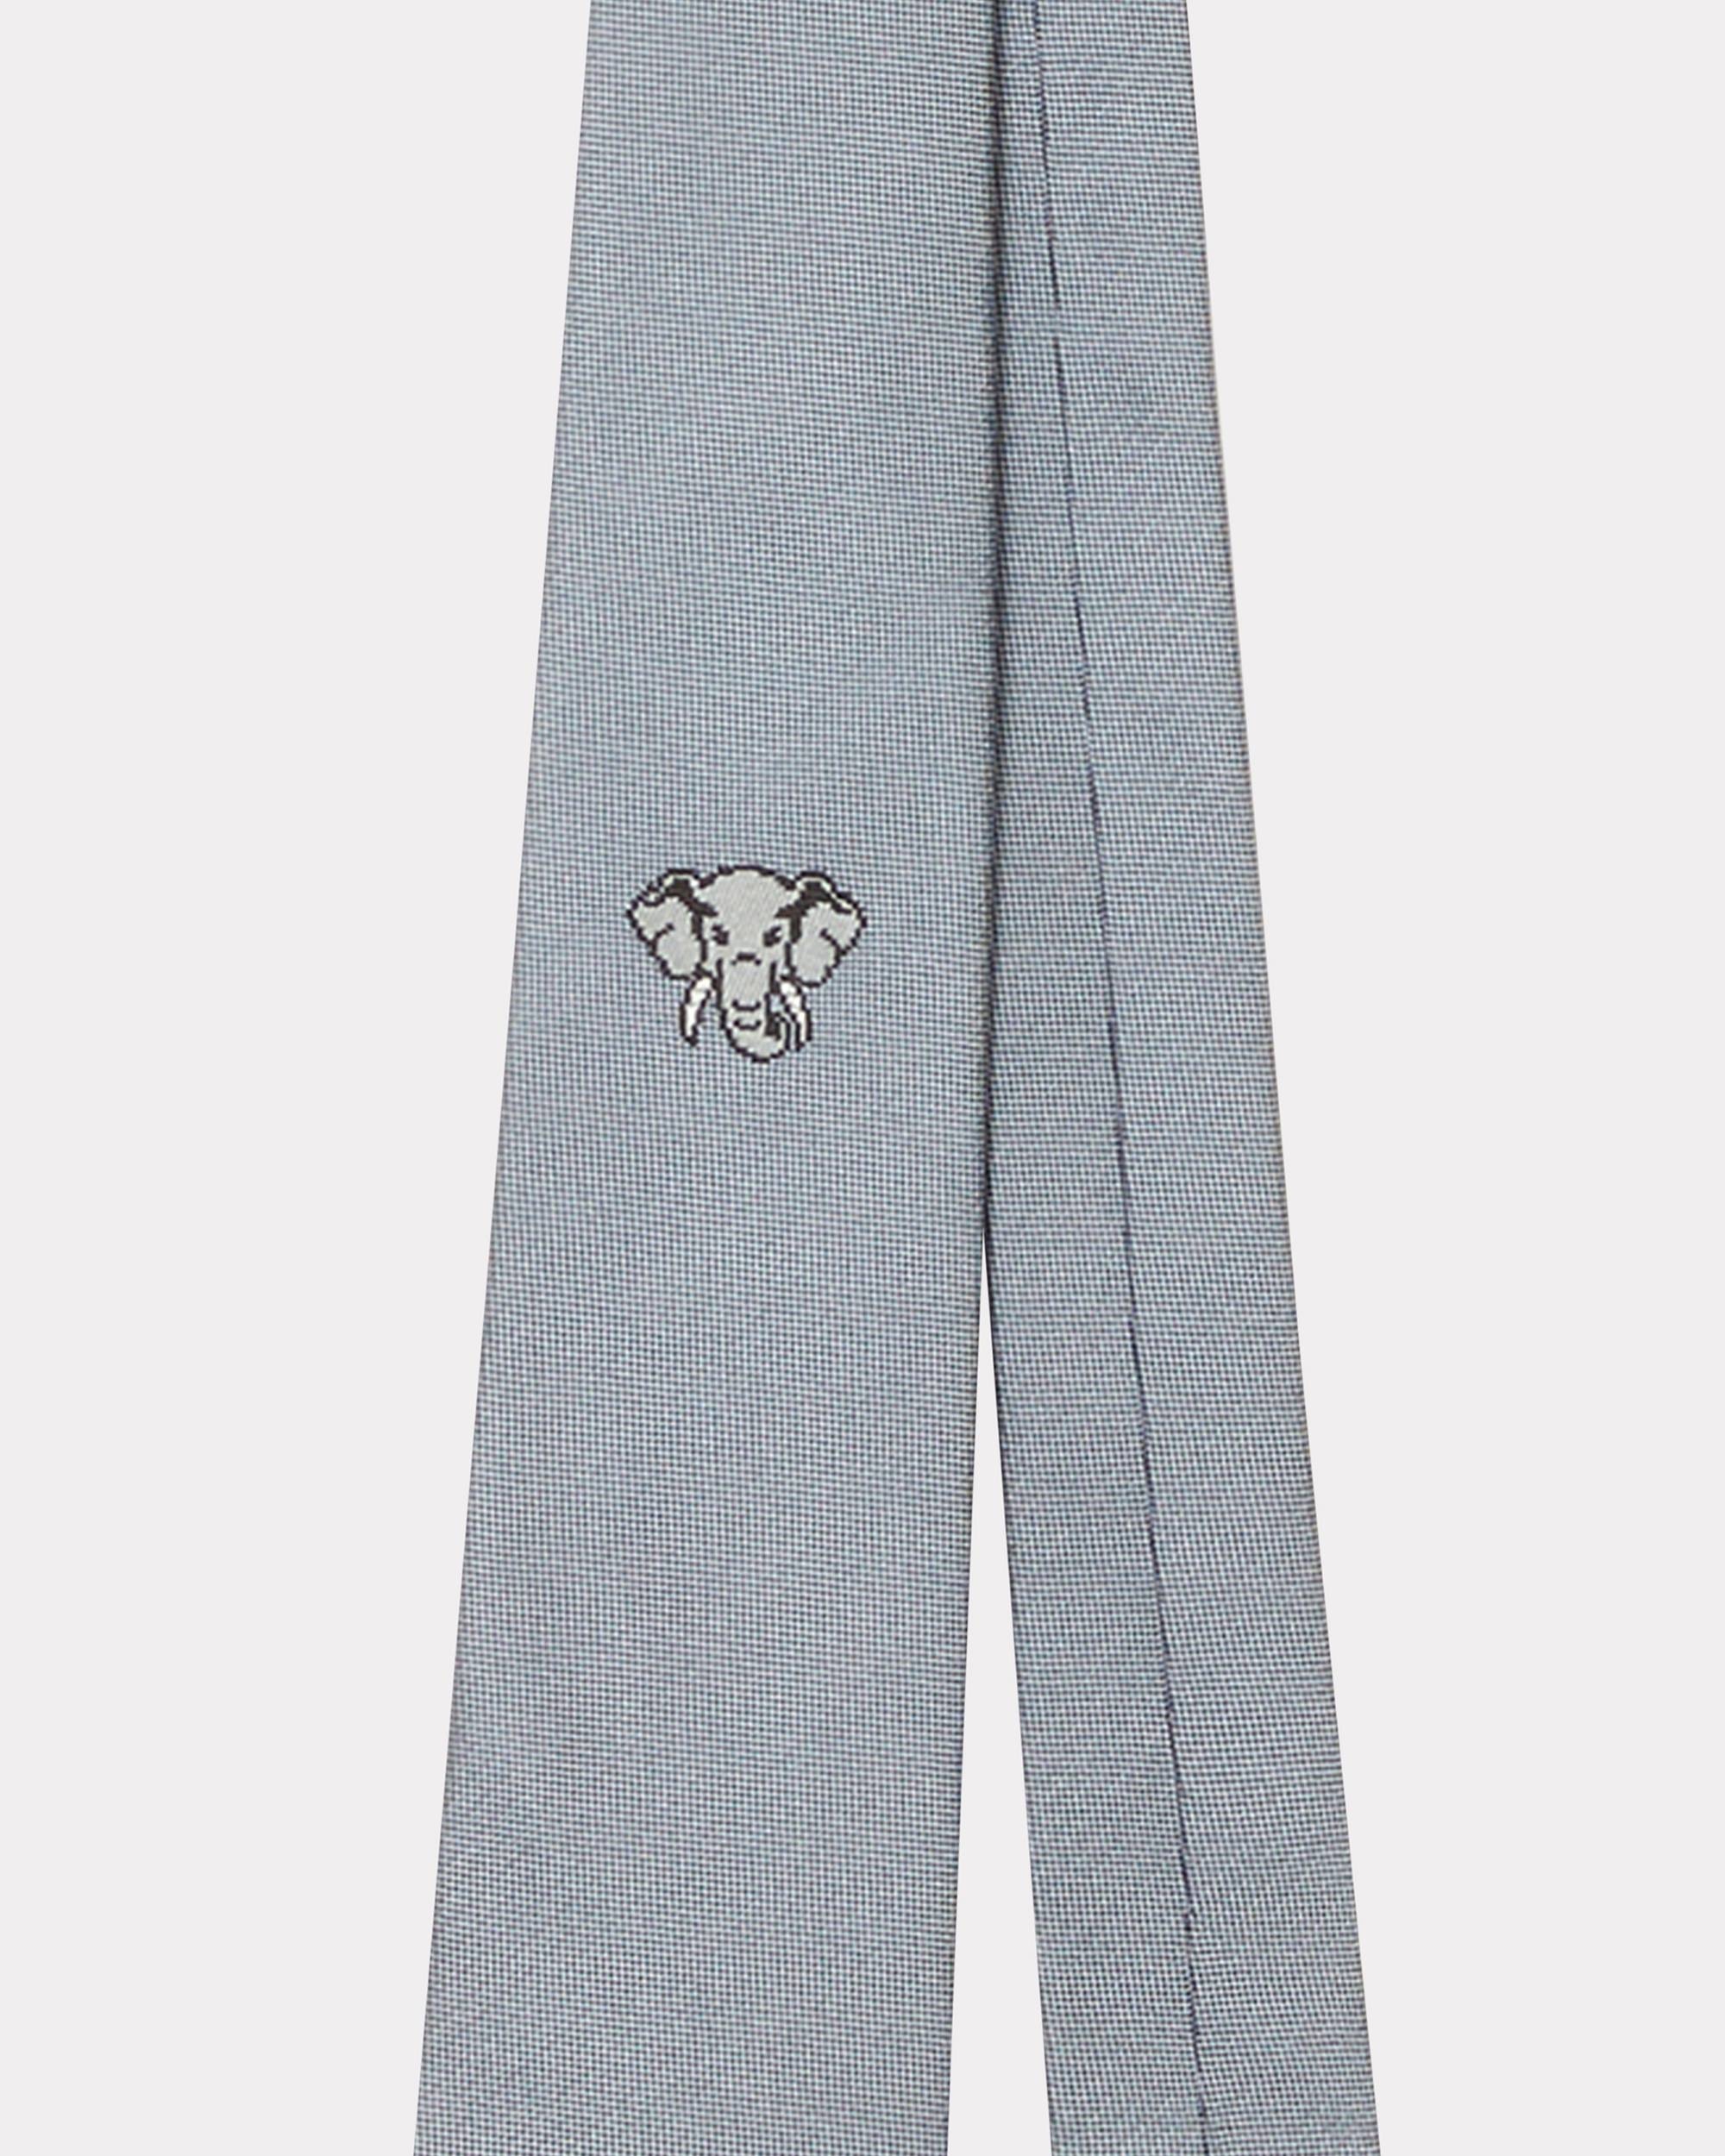 'KENZO Elephant' silk tie - 2